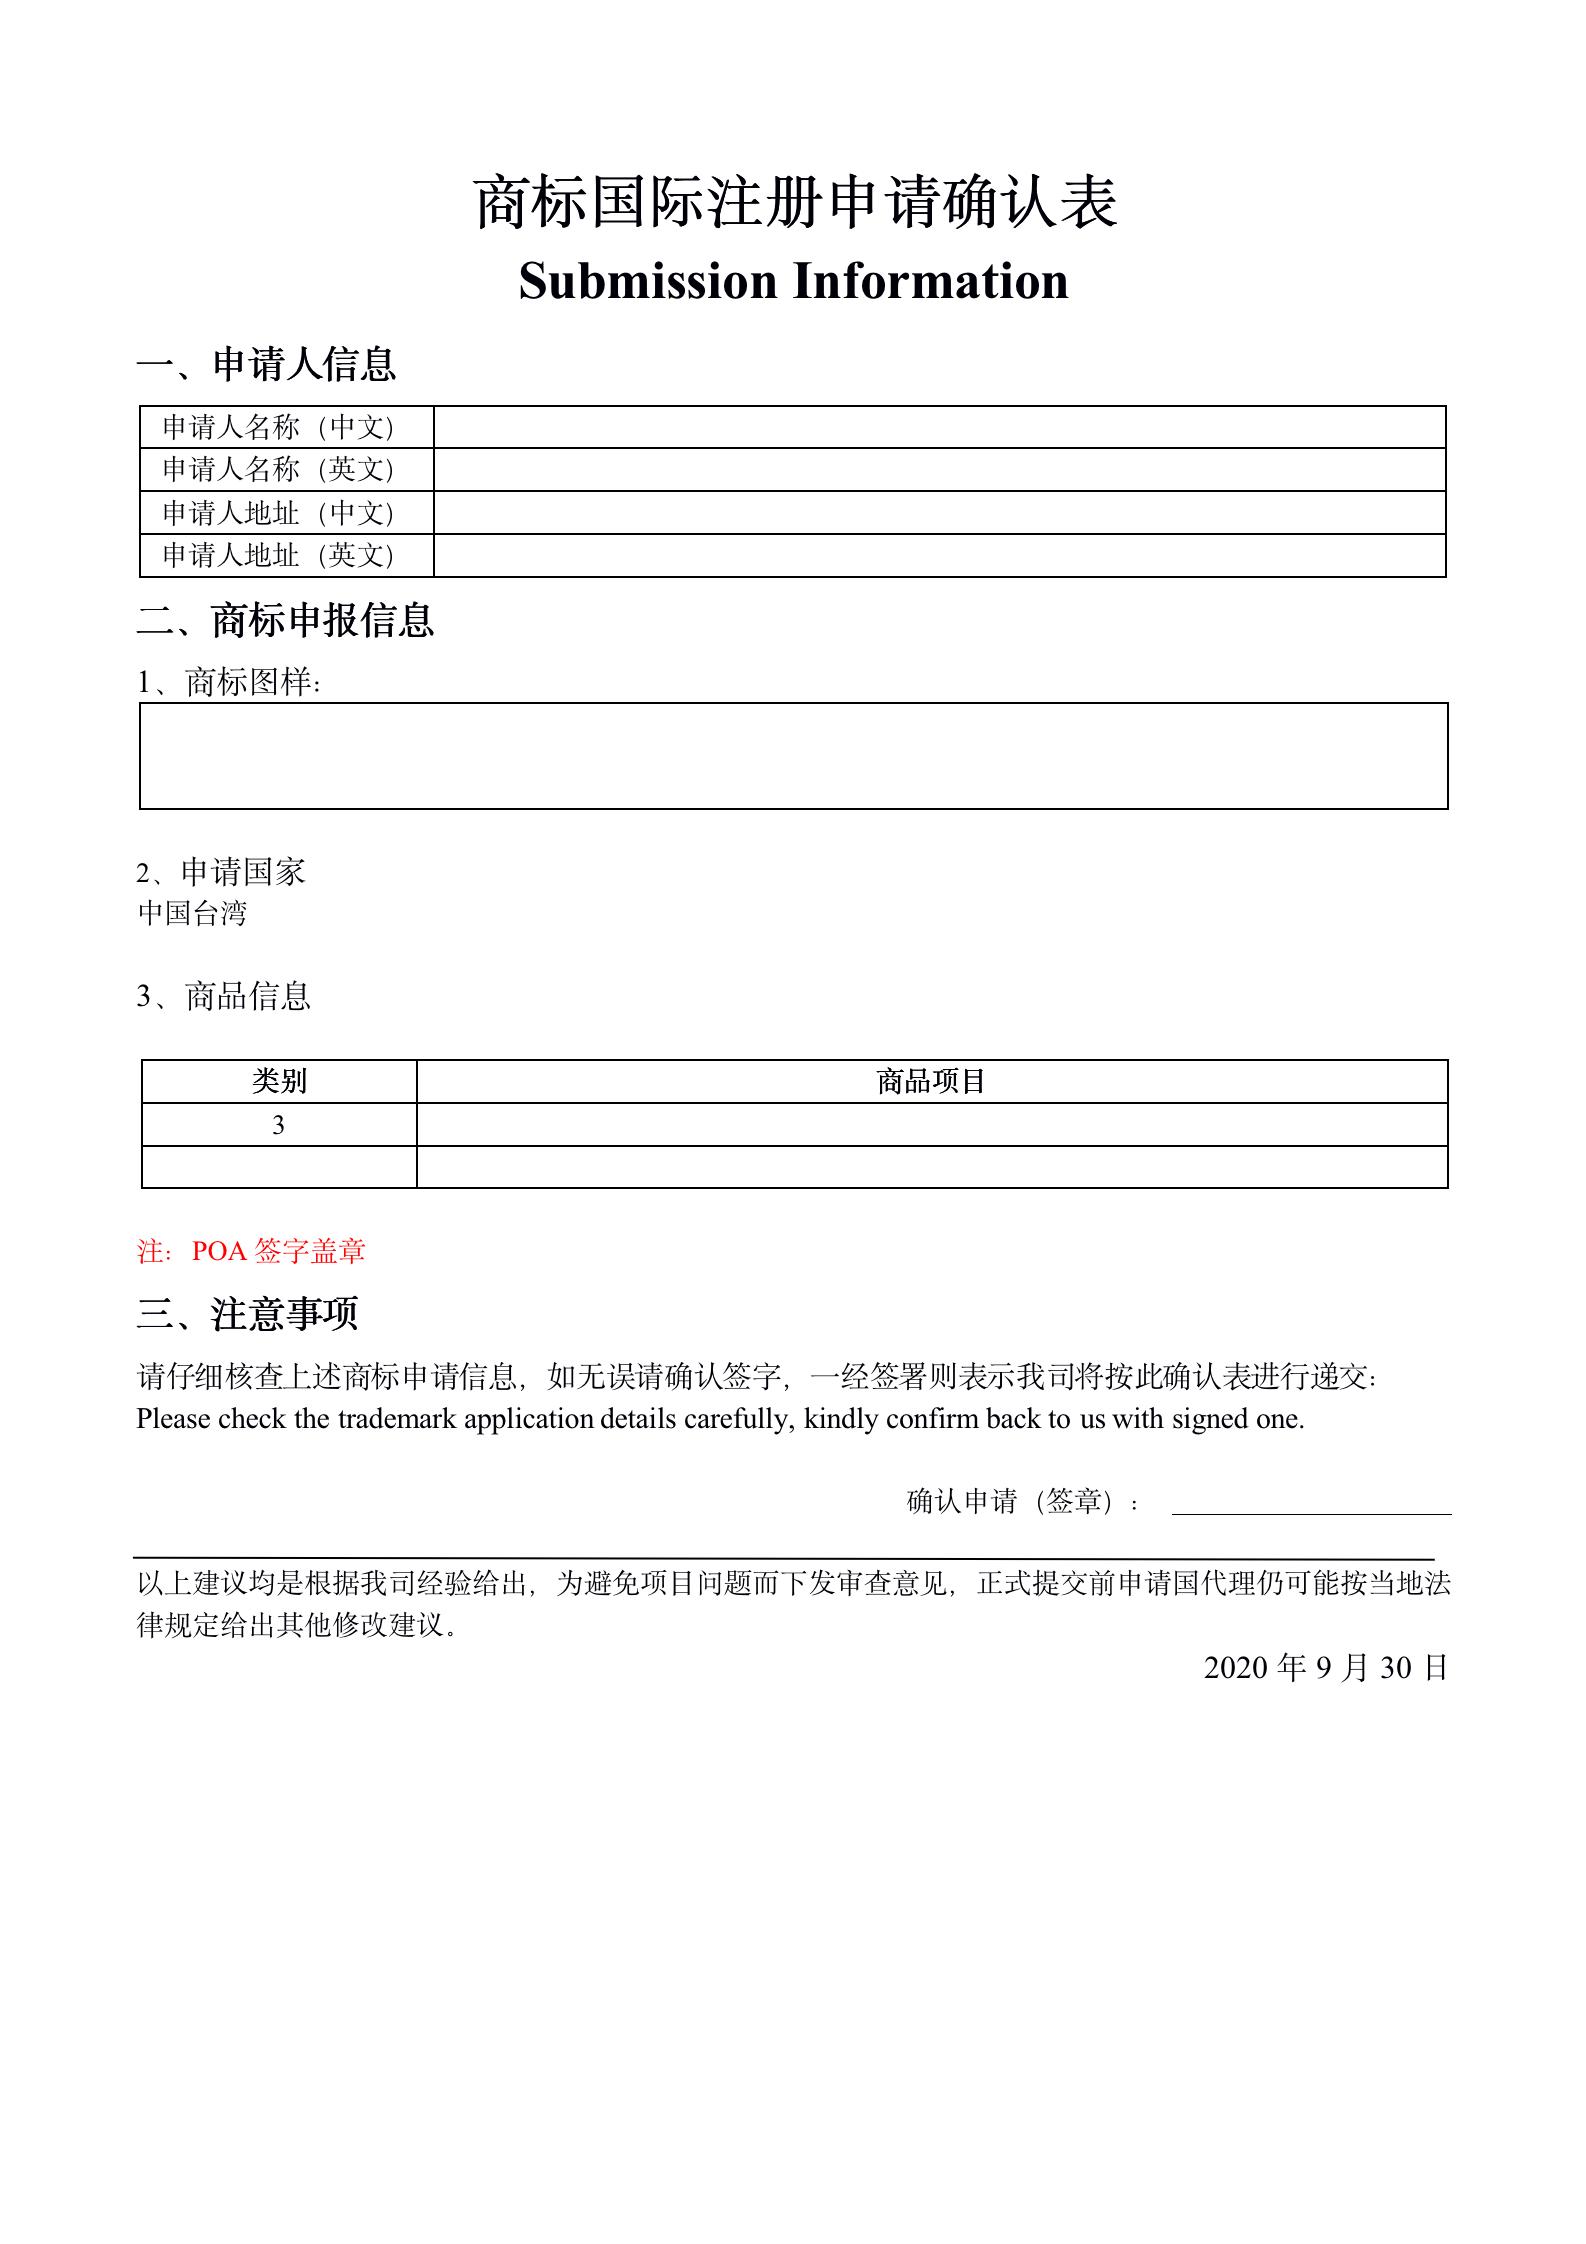 中国台湾商标确认表样本_01.jpg